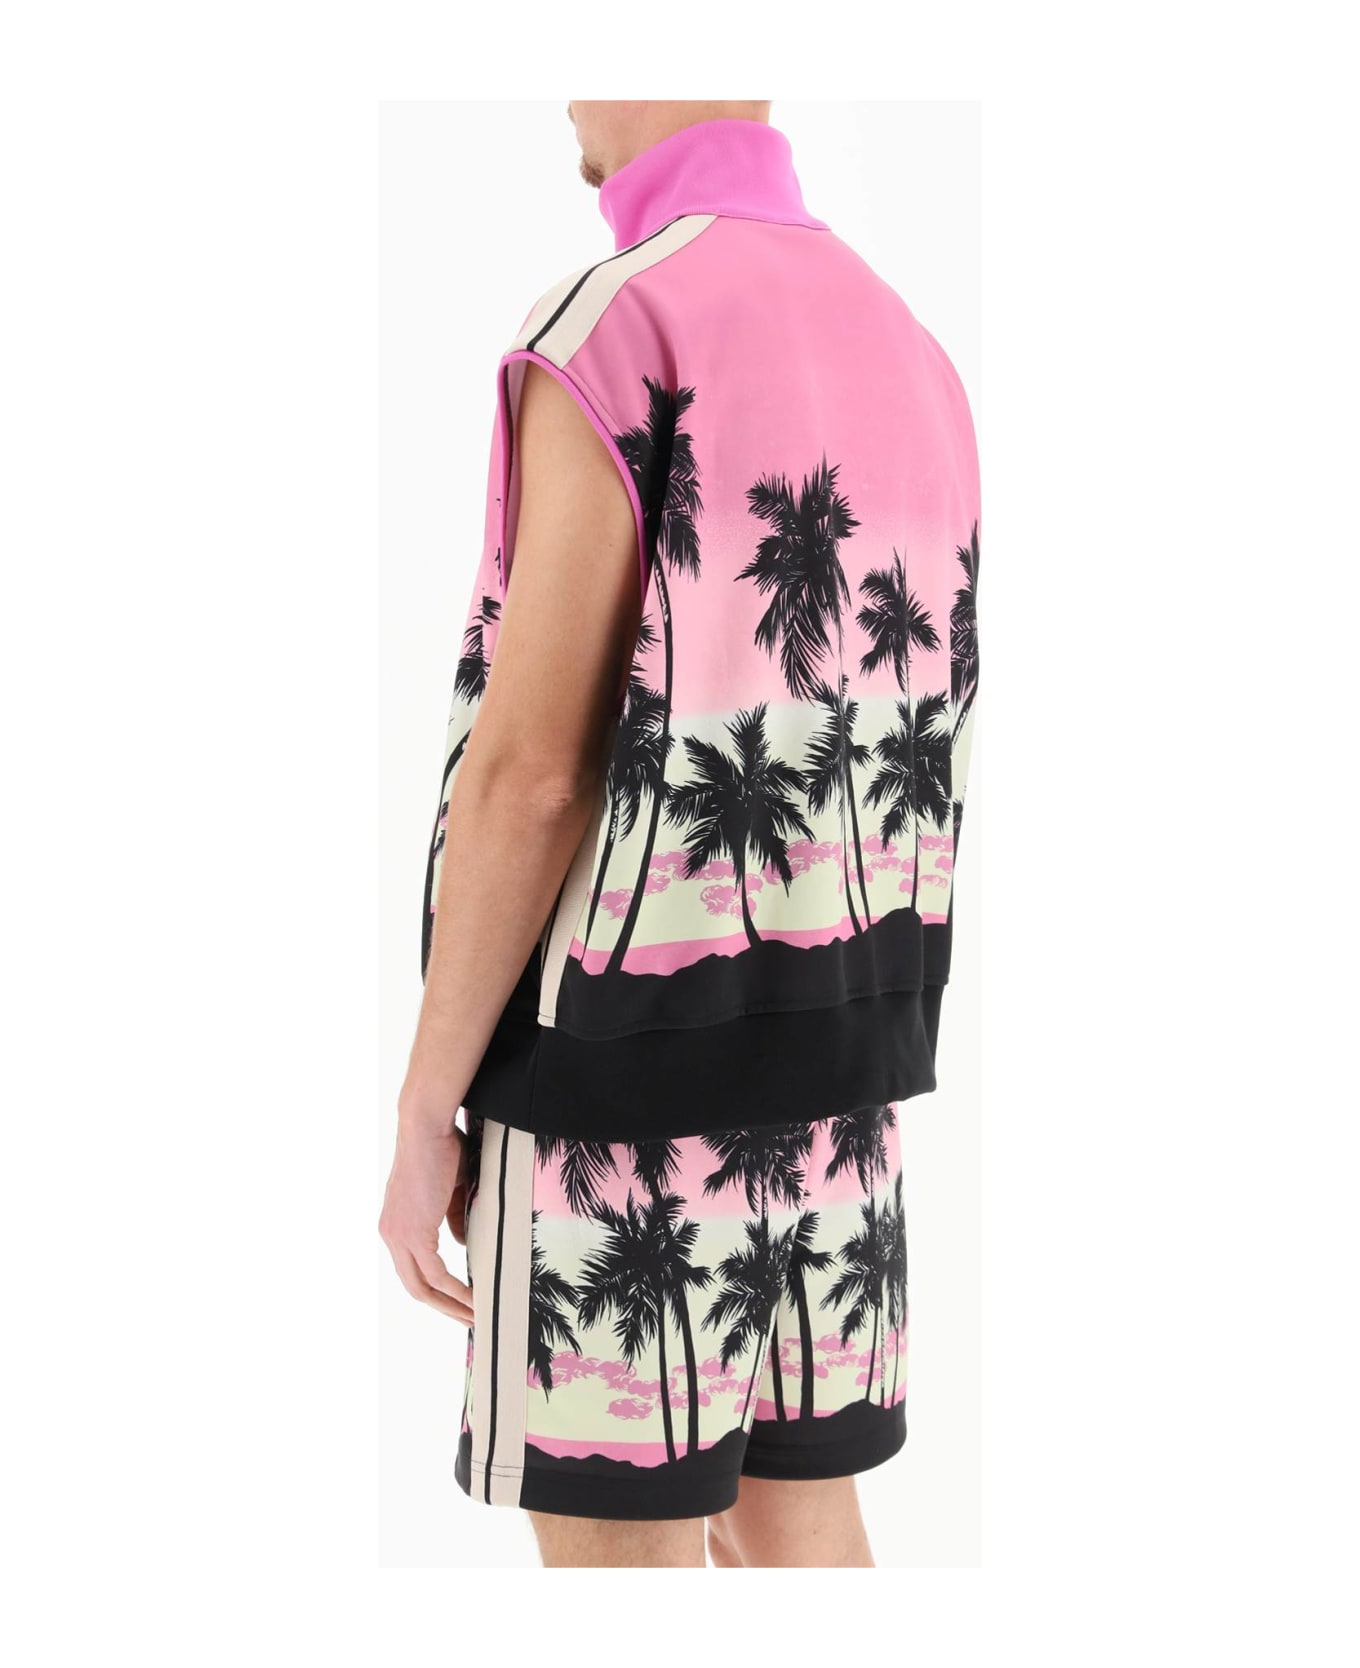 Palm Angels Sunset Track Vest - Pink